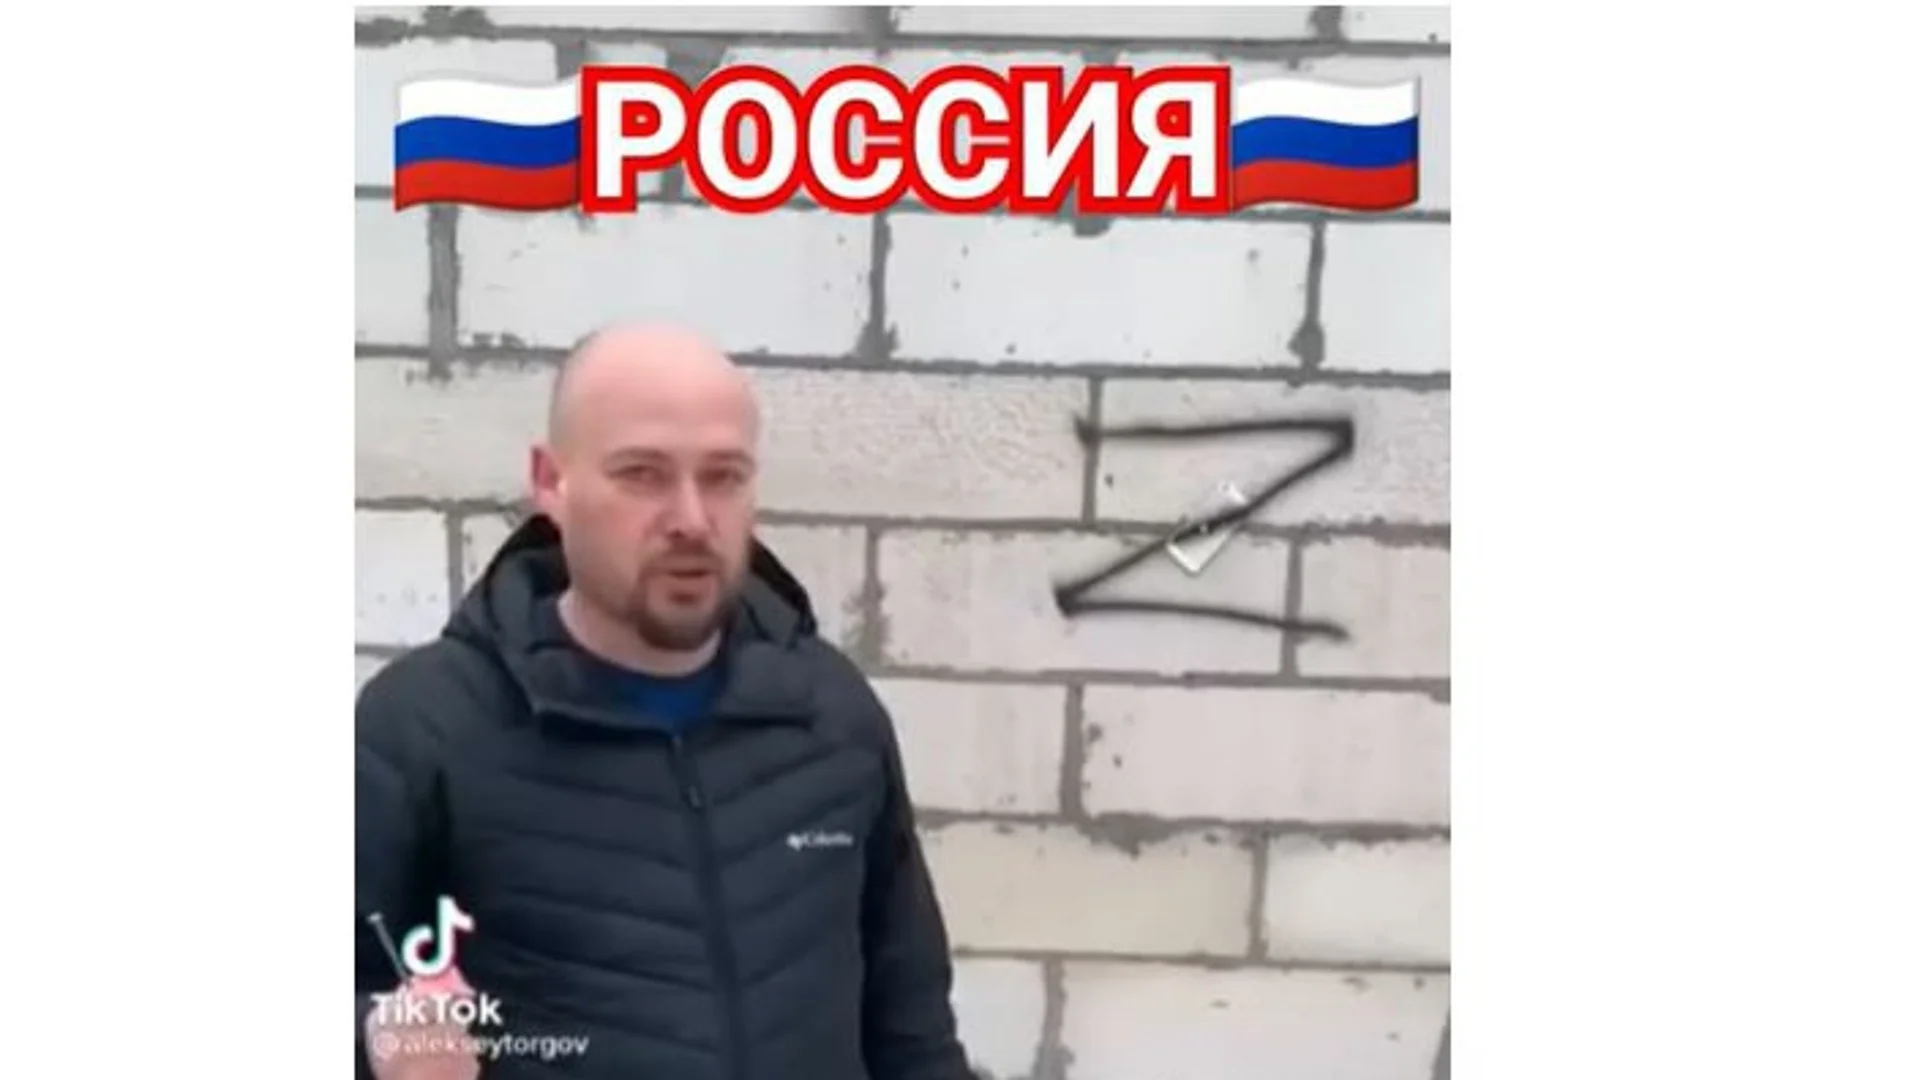 "Моят отговор на санкциите!": Руснак закова мобилния си телефон на стената (ВИДЕО)